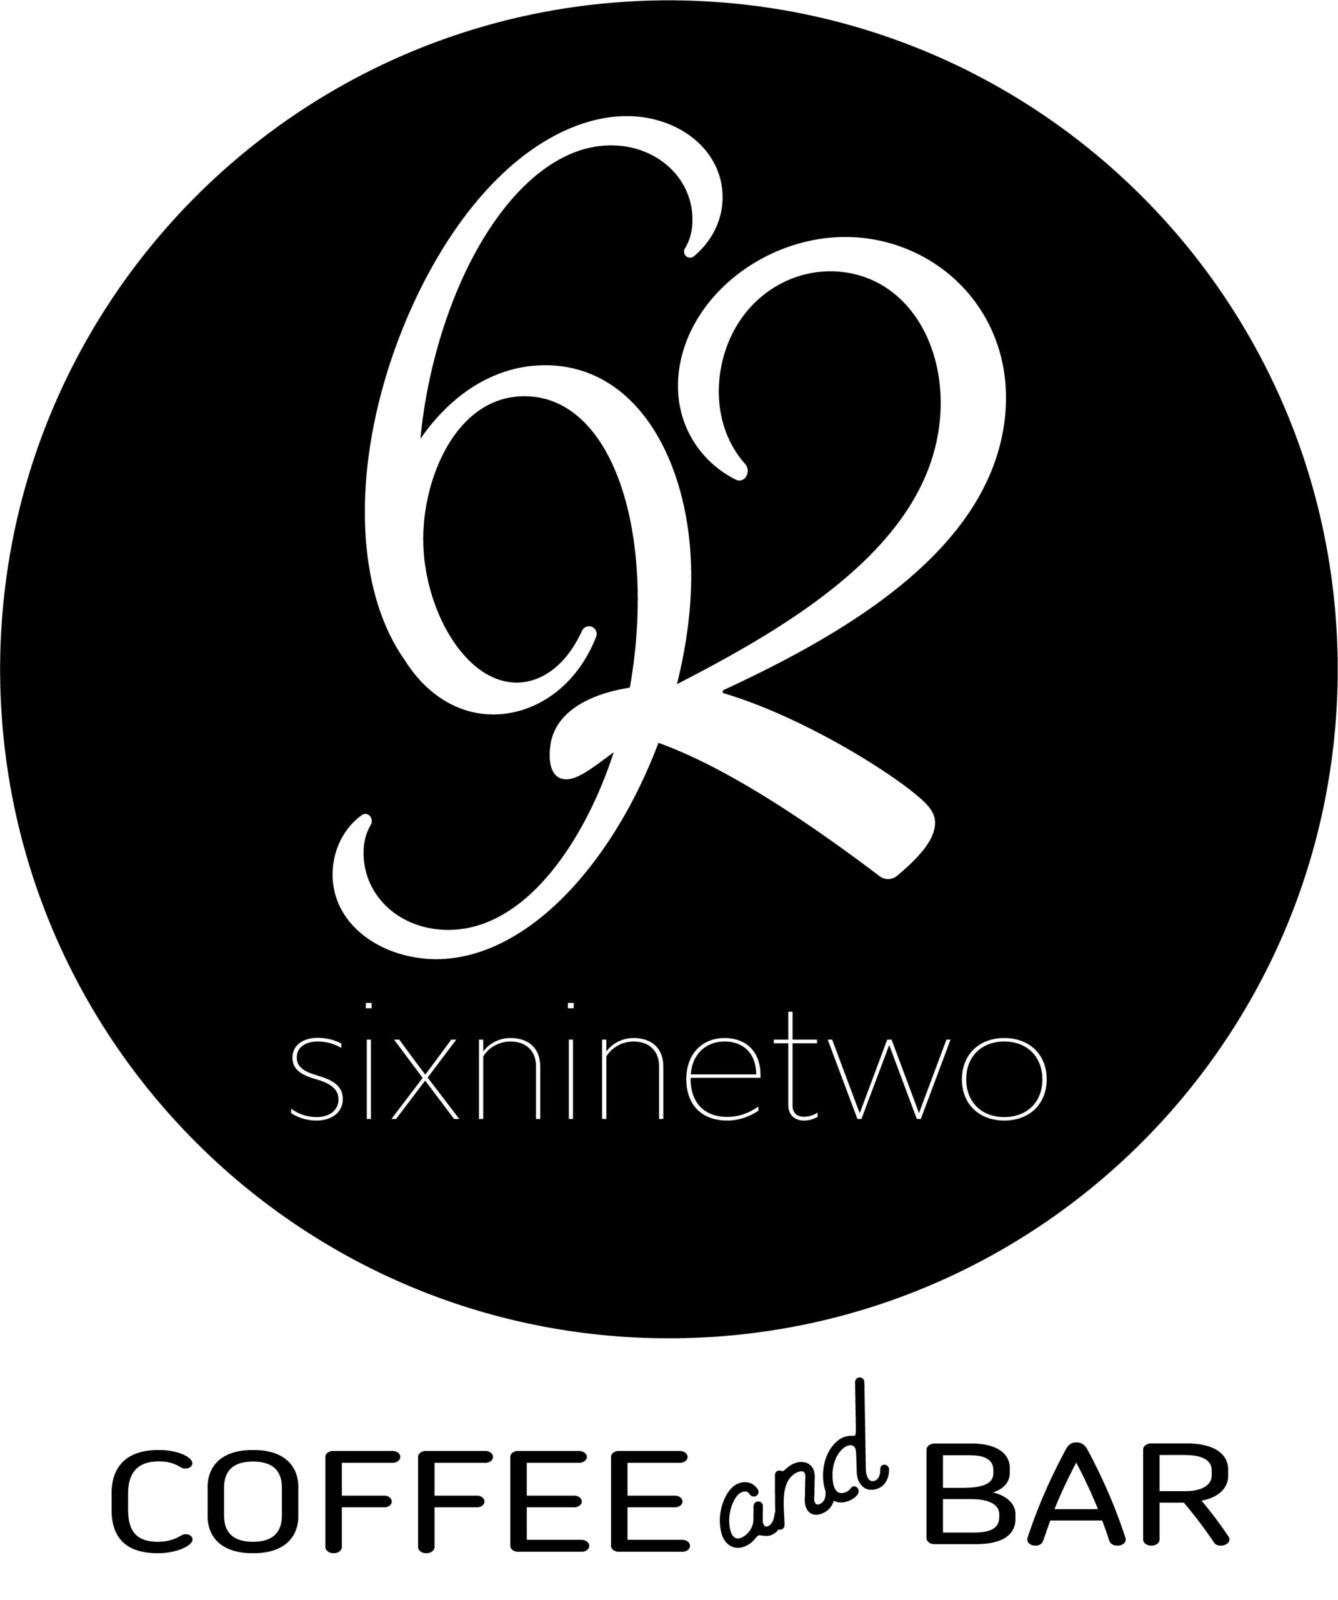 692 Coffee and Bar logo